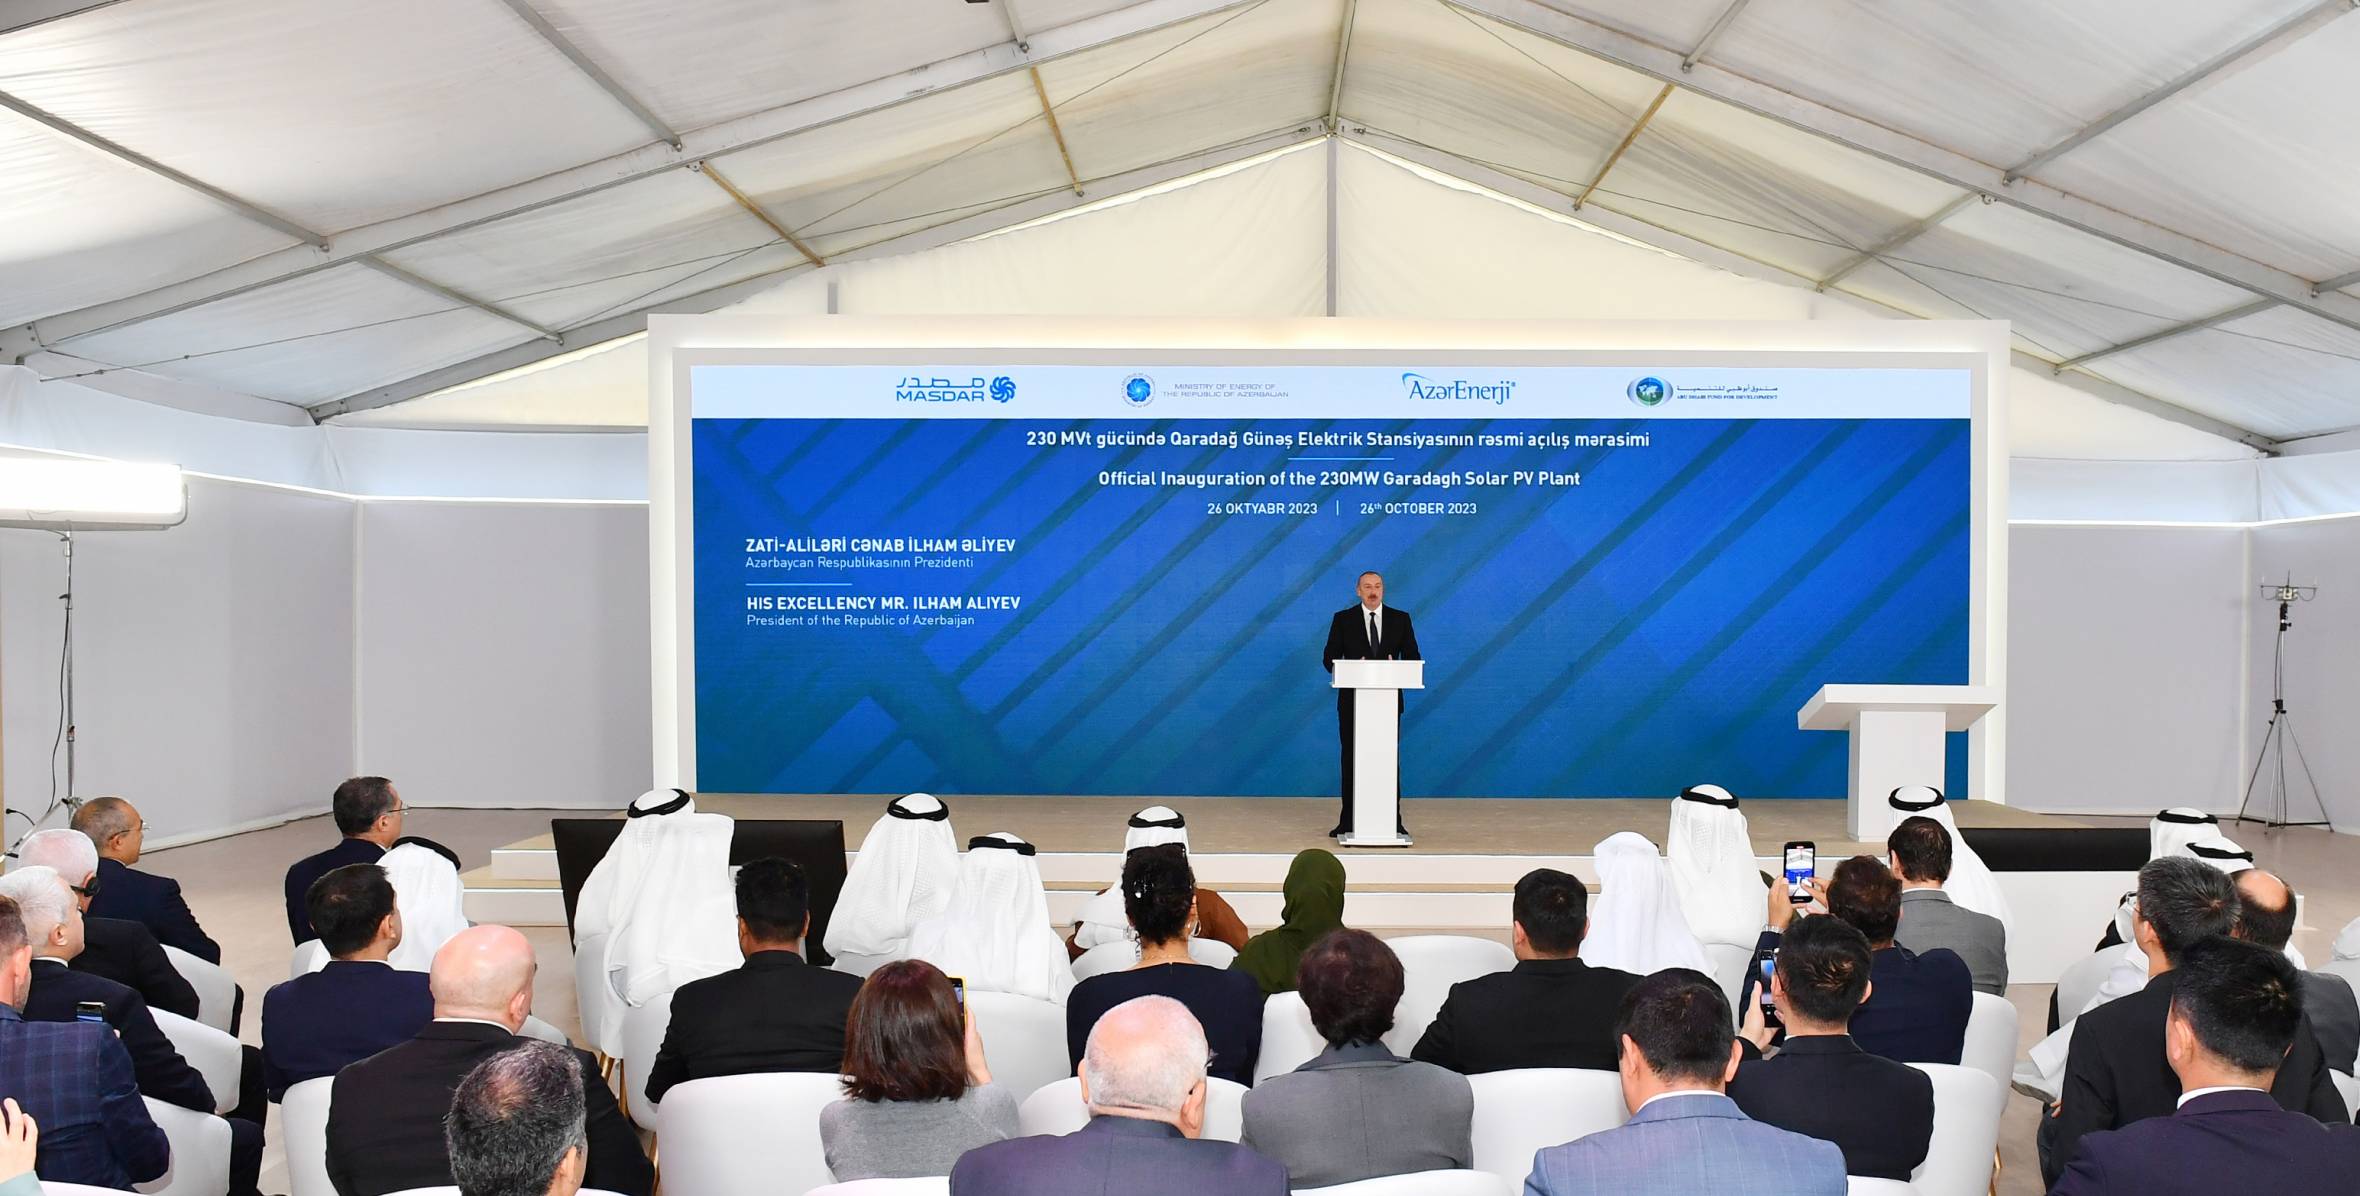 Речь Ильхама Алиева на церемонии официального открытия Гарадагской солнечной электростанции мощностью 230 МВт